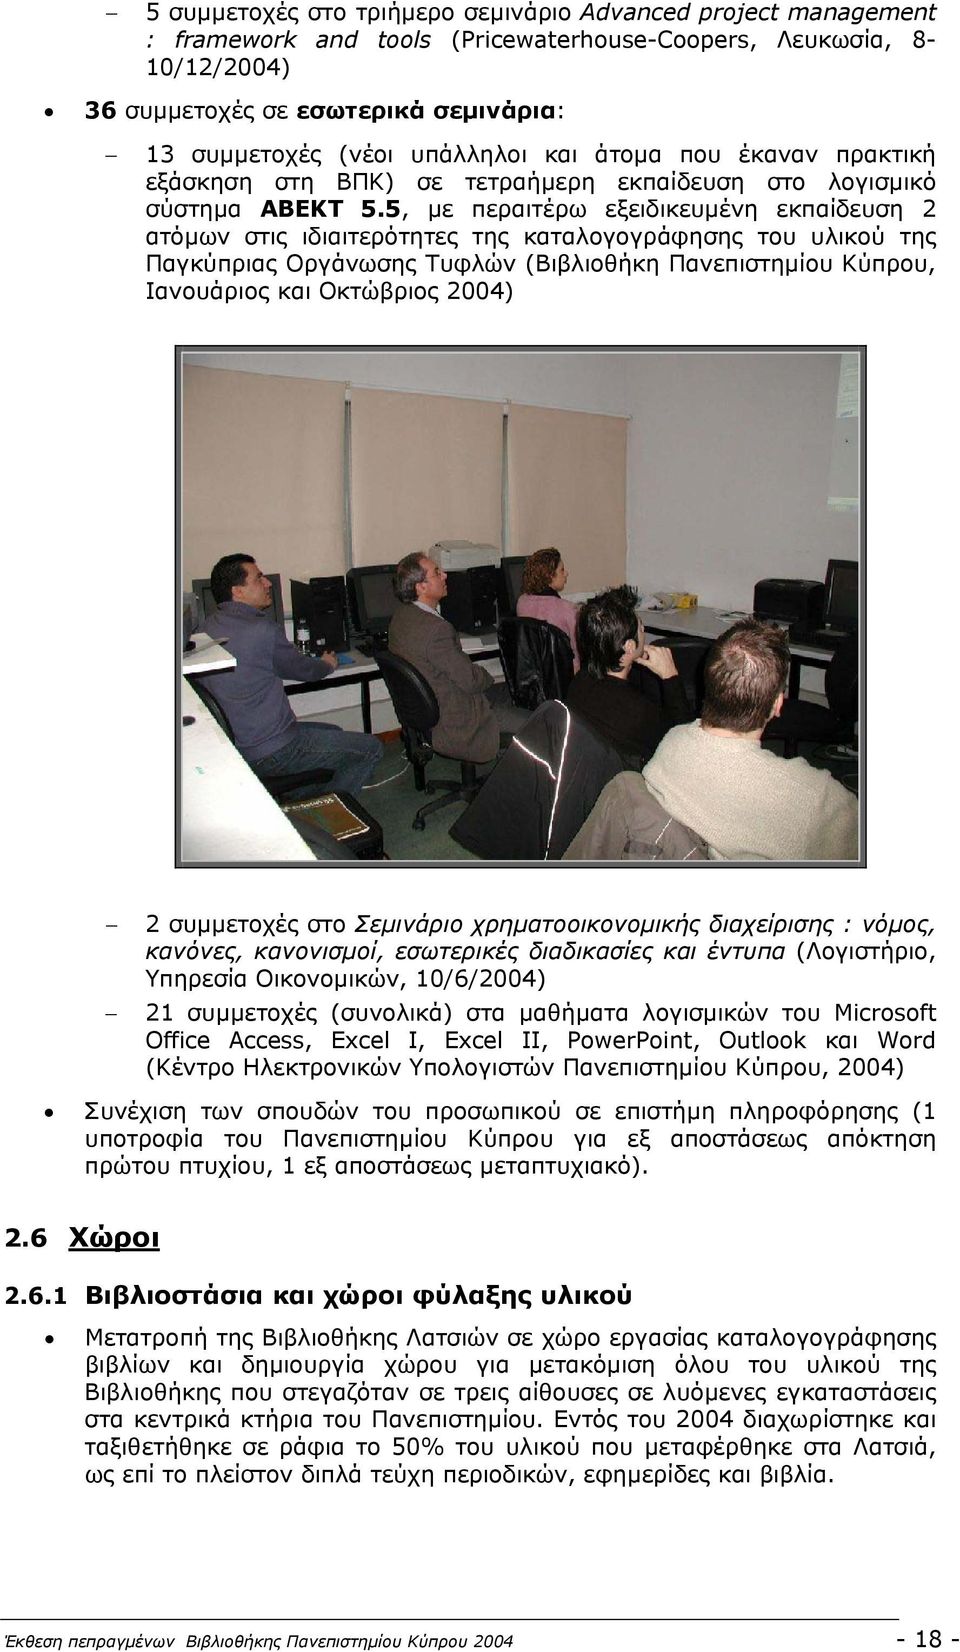 5, µε περαιτέρω εξειδικευµένη εκπαίδευση 2 ατόµων στις ιδιαιτερότητες της καταλογογράφησης του υλικού της Παγκύπριας Οργάνωσης Τυφλών (Βιβλιοθήκη Πανεπιστηµίου Κύπρου, Ιανουάριος και Οκτώβριος 2004)